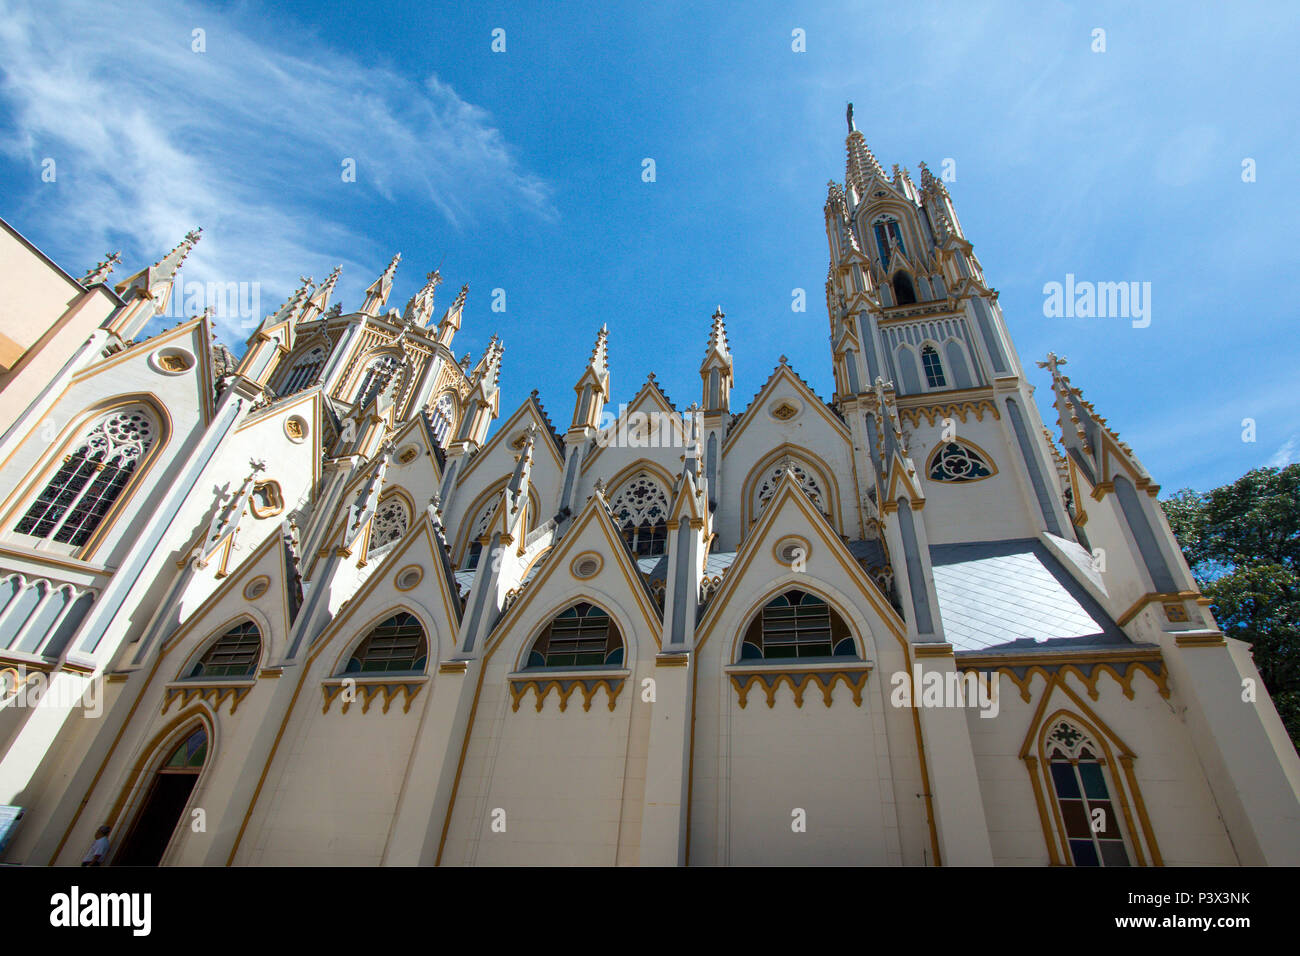 Torres no estilo gótico fazem parte da Basílica Nossa Senhora de Lurdes, que possui arquitetura predominantemente neogótica, situada na cidade de Belo Horizonte, Minas Gerais. Stock Photo